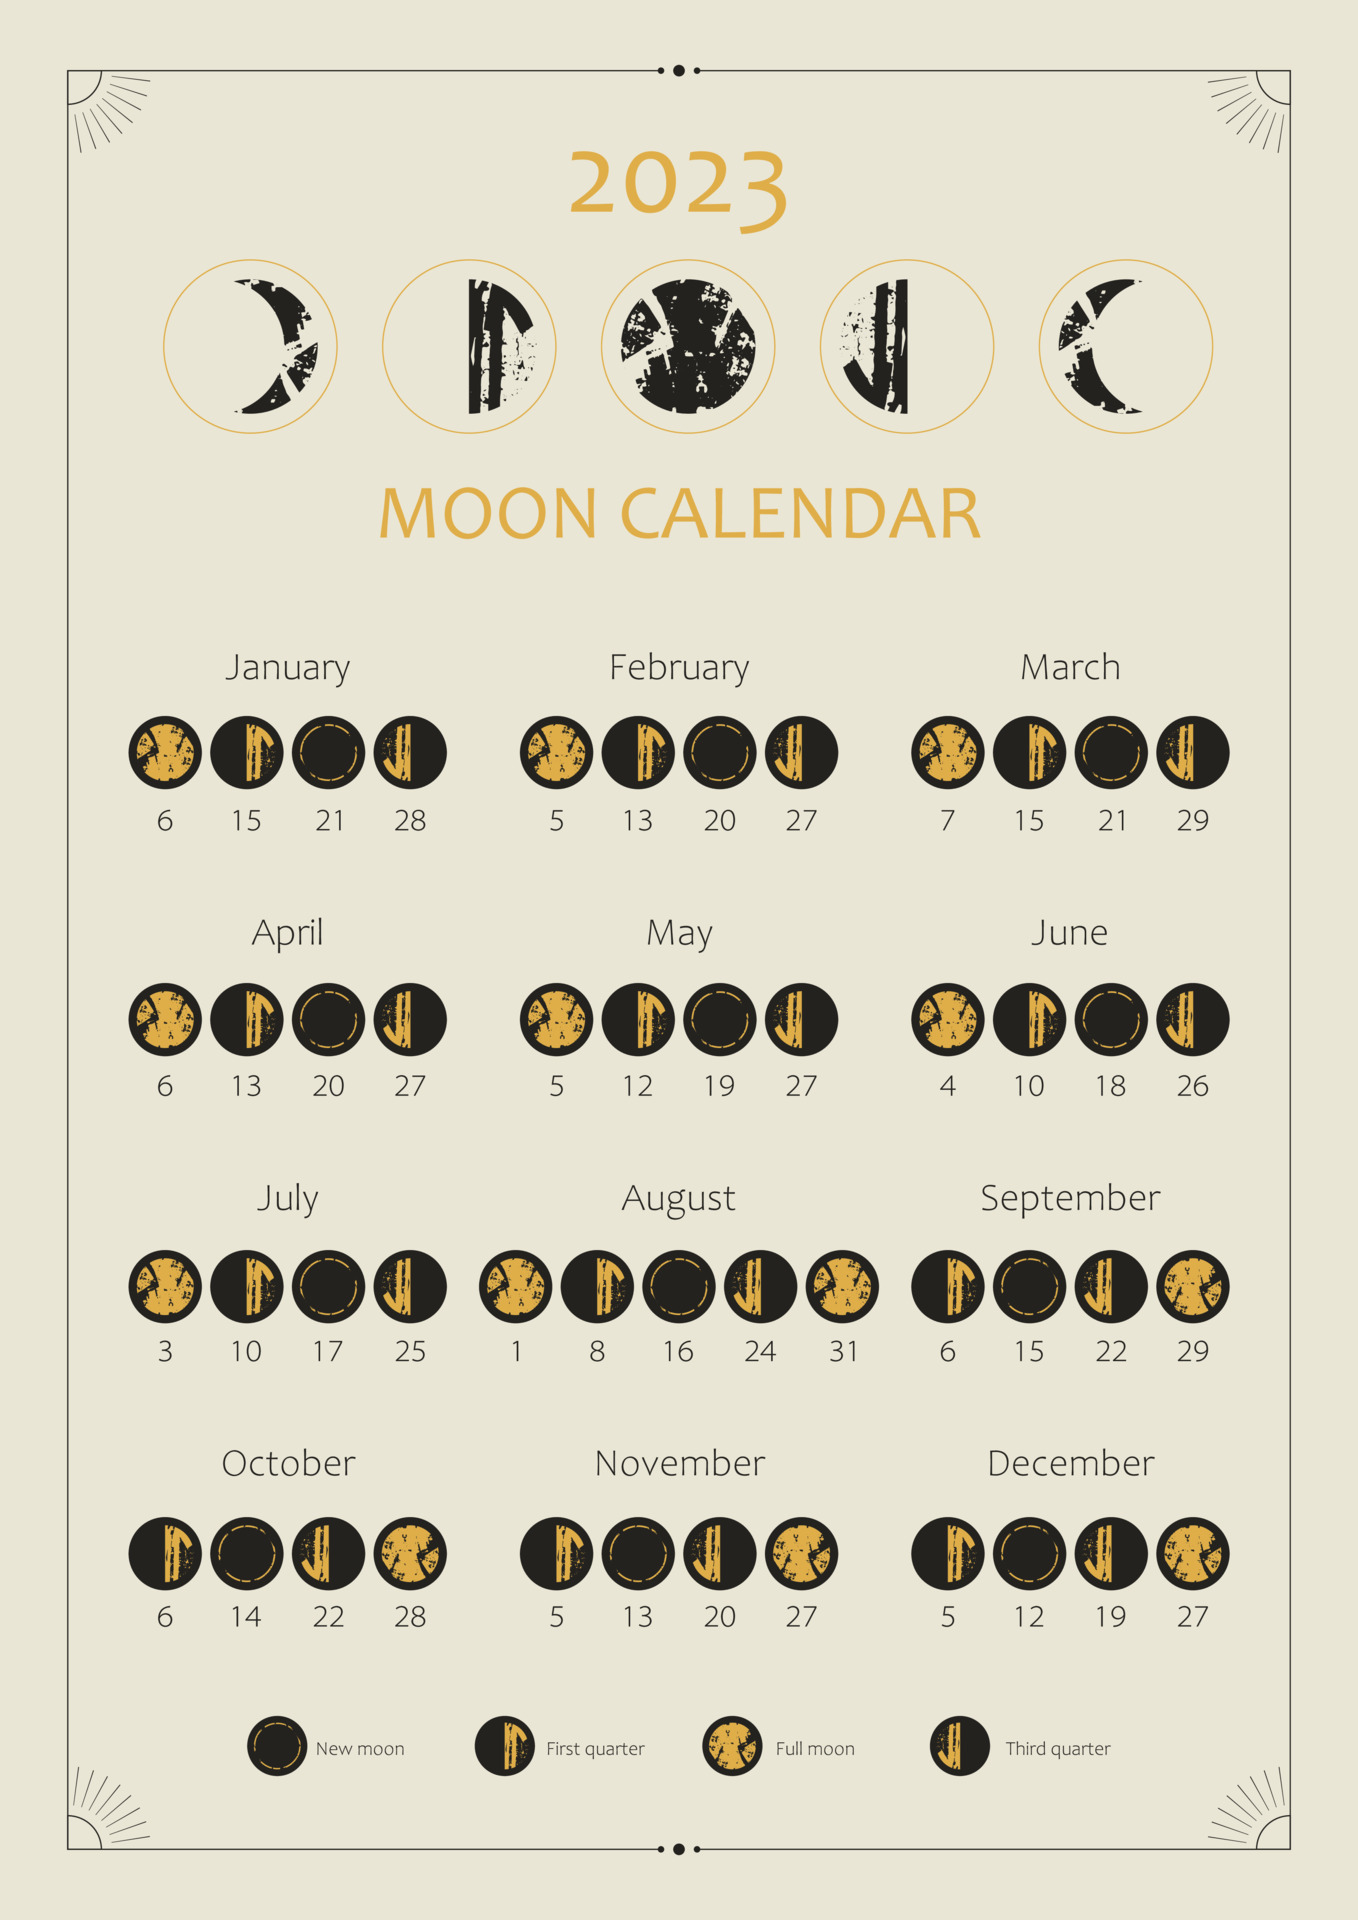 New Moon Calendar 2023 Astrology